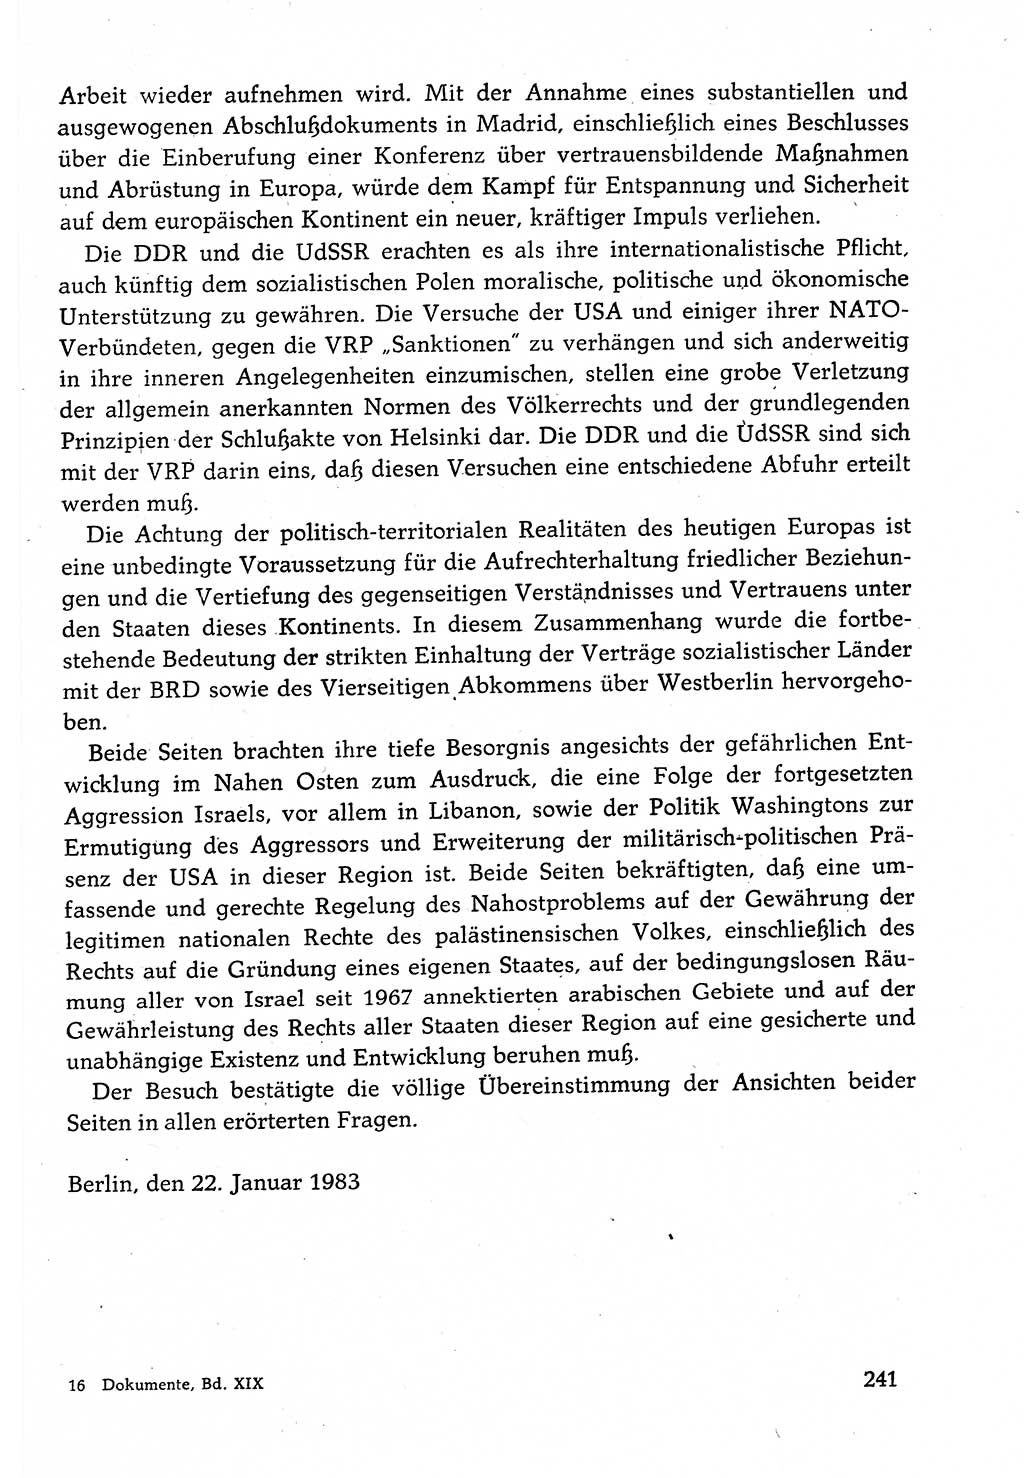 Dokumente der Sozialistischen Einheitspartei Deutschlands (SED) [Deutsche Demokratische Republik (DDR)] 1982-1983, Seite 241 (Dok. SED DDR 1982-1983, S. 241)